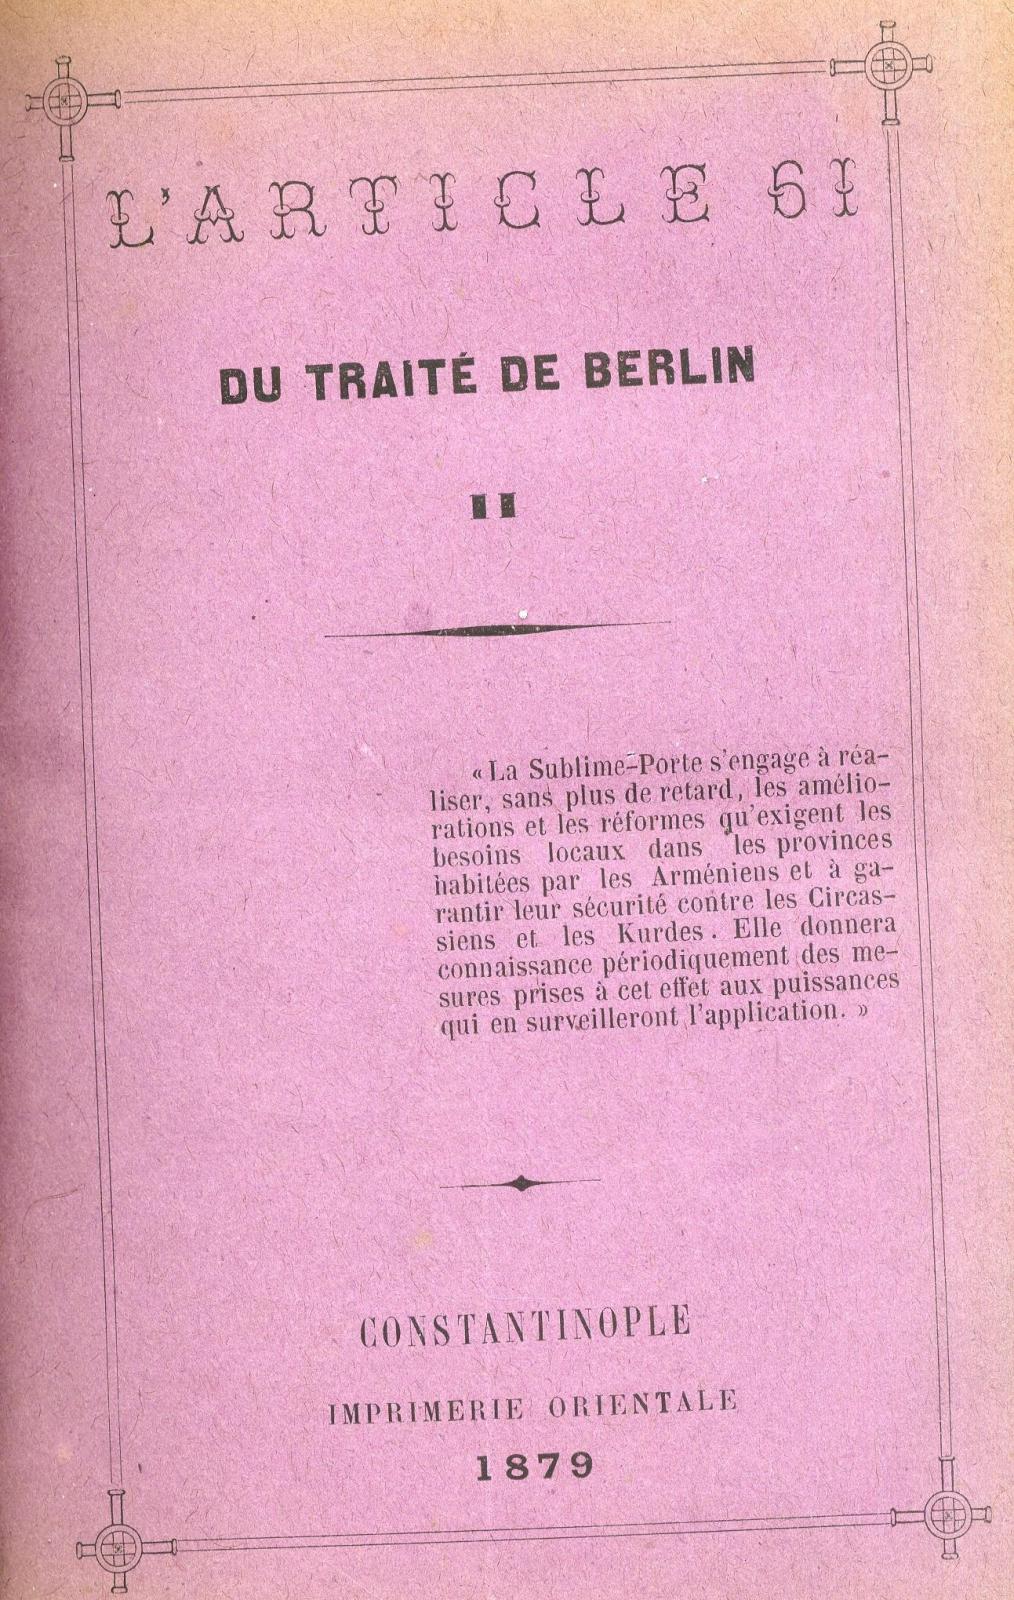 L'article 61 du Traité de Berlin